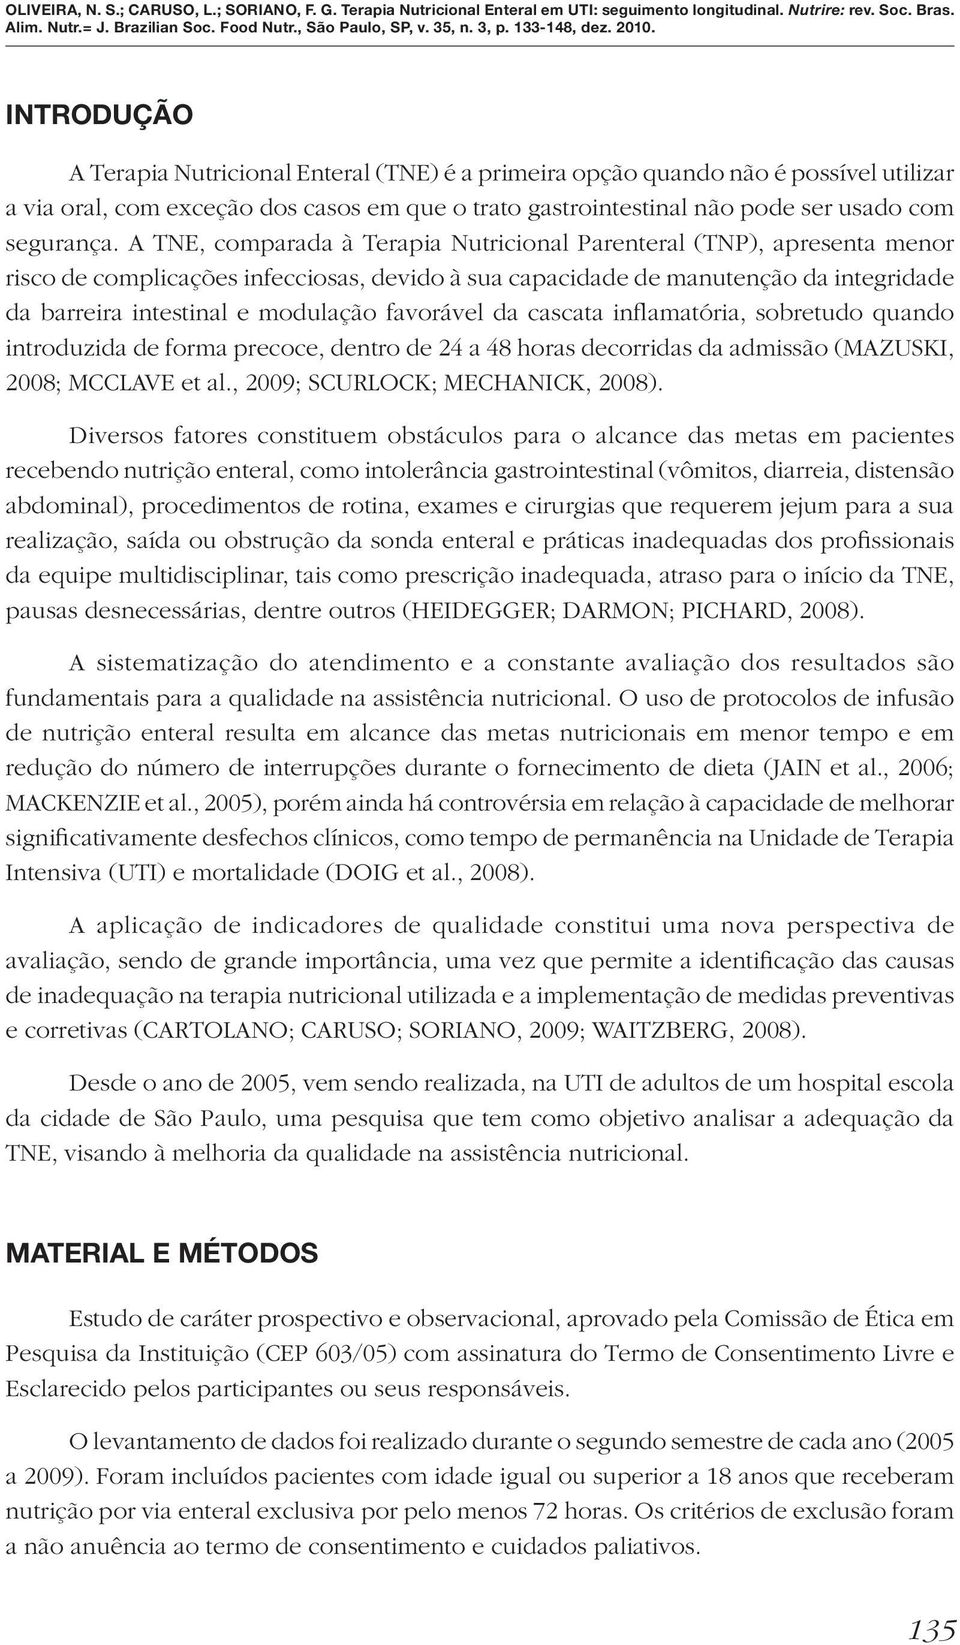 favorável da cascata inflamatória, sobretudo quando introduzida de forma precoce, dentro de 24 a 48 horas decorridas da admissão (MAZUSKI, 2008; MCCLAVE et al., 2009; SCURLOCK; MECHANICK, 2008).